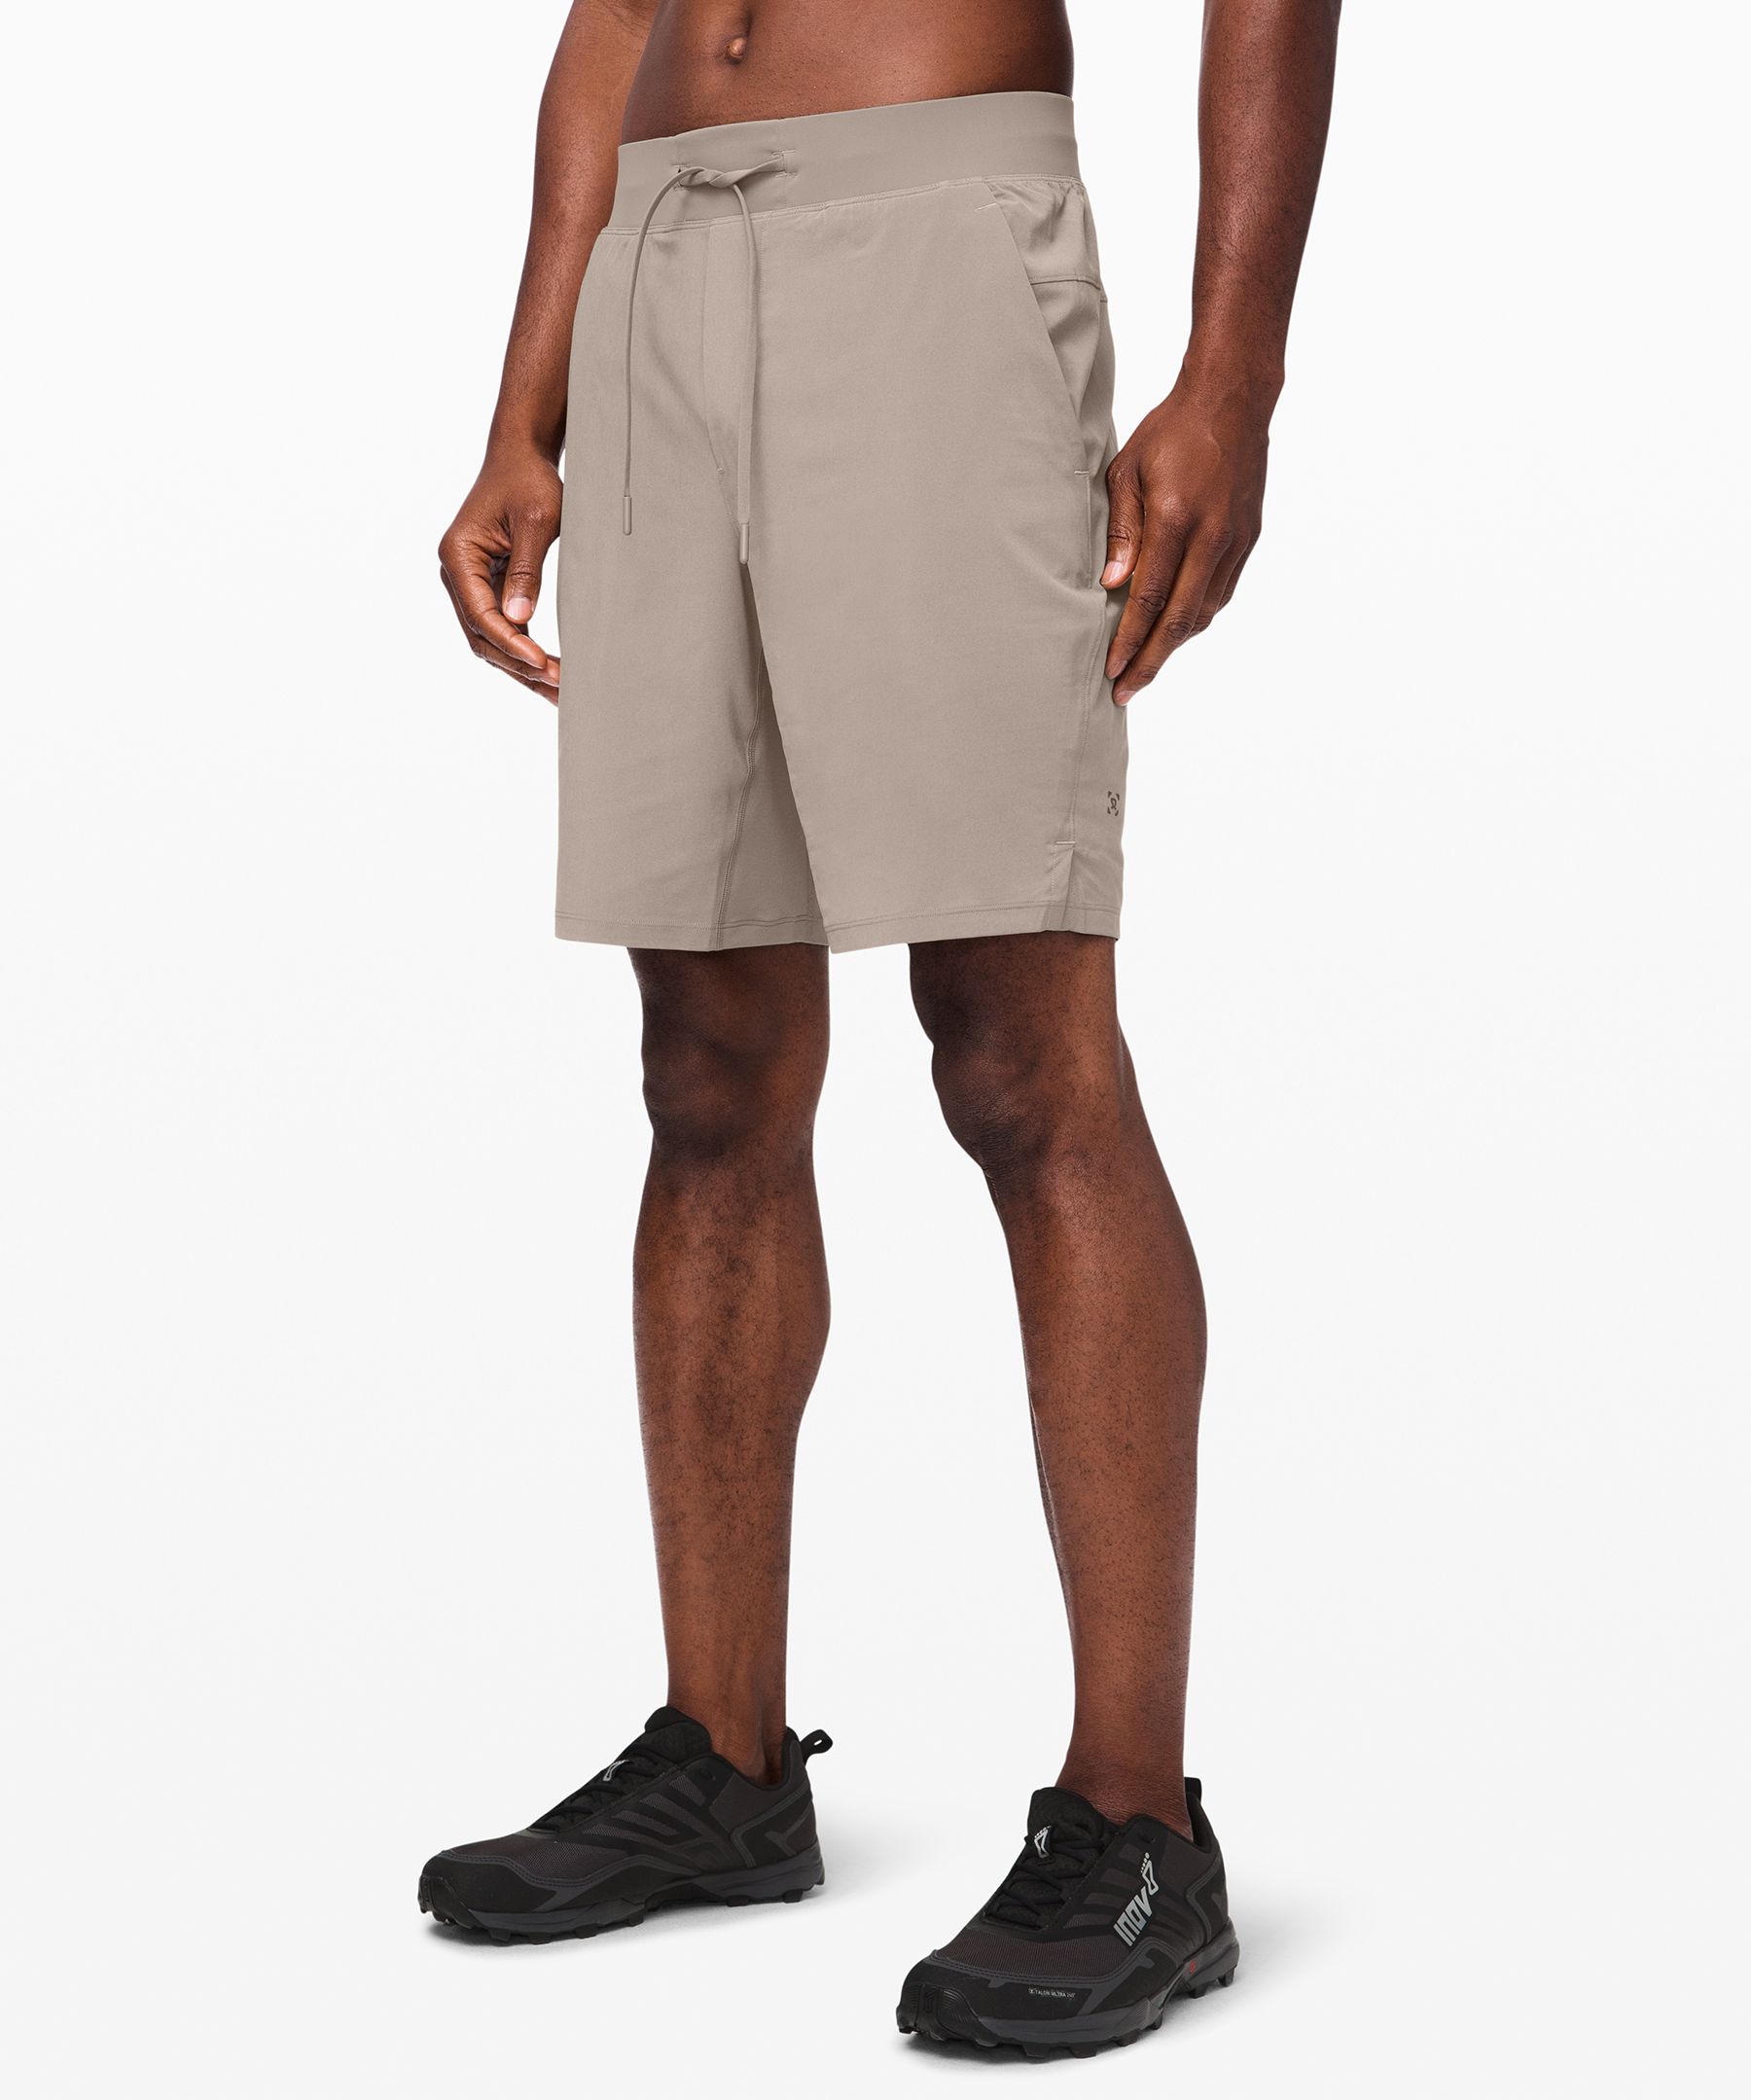 lululemon shorts size 0